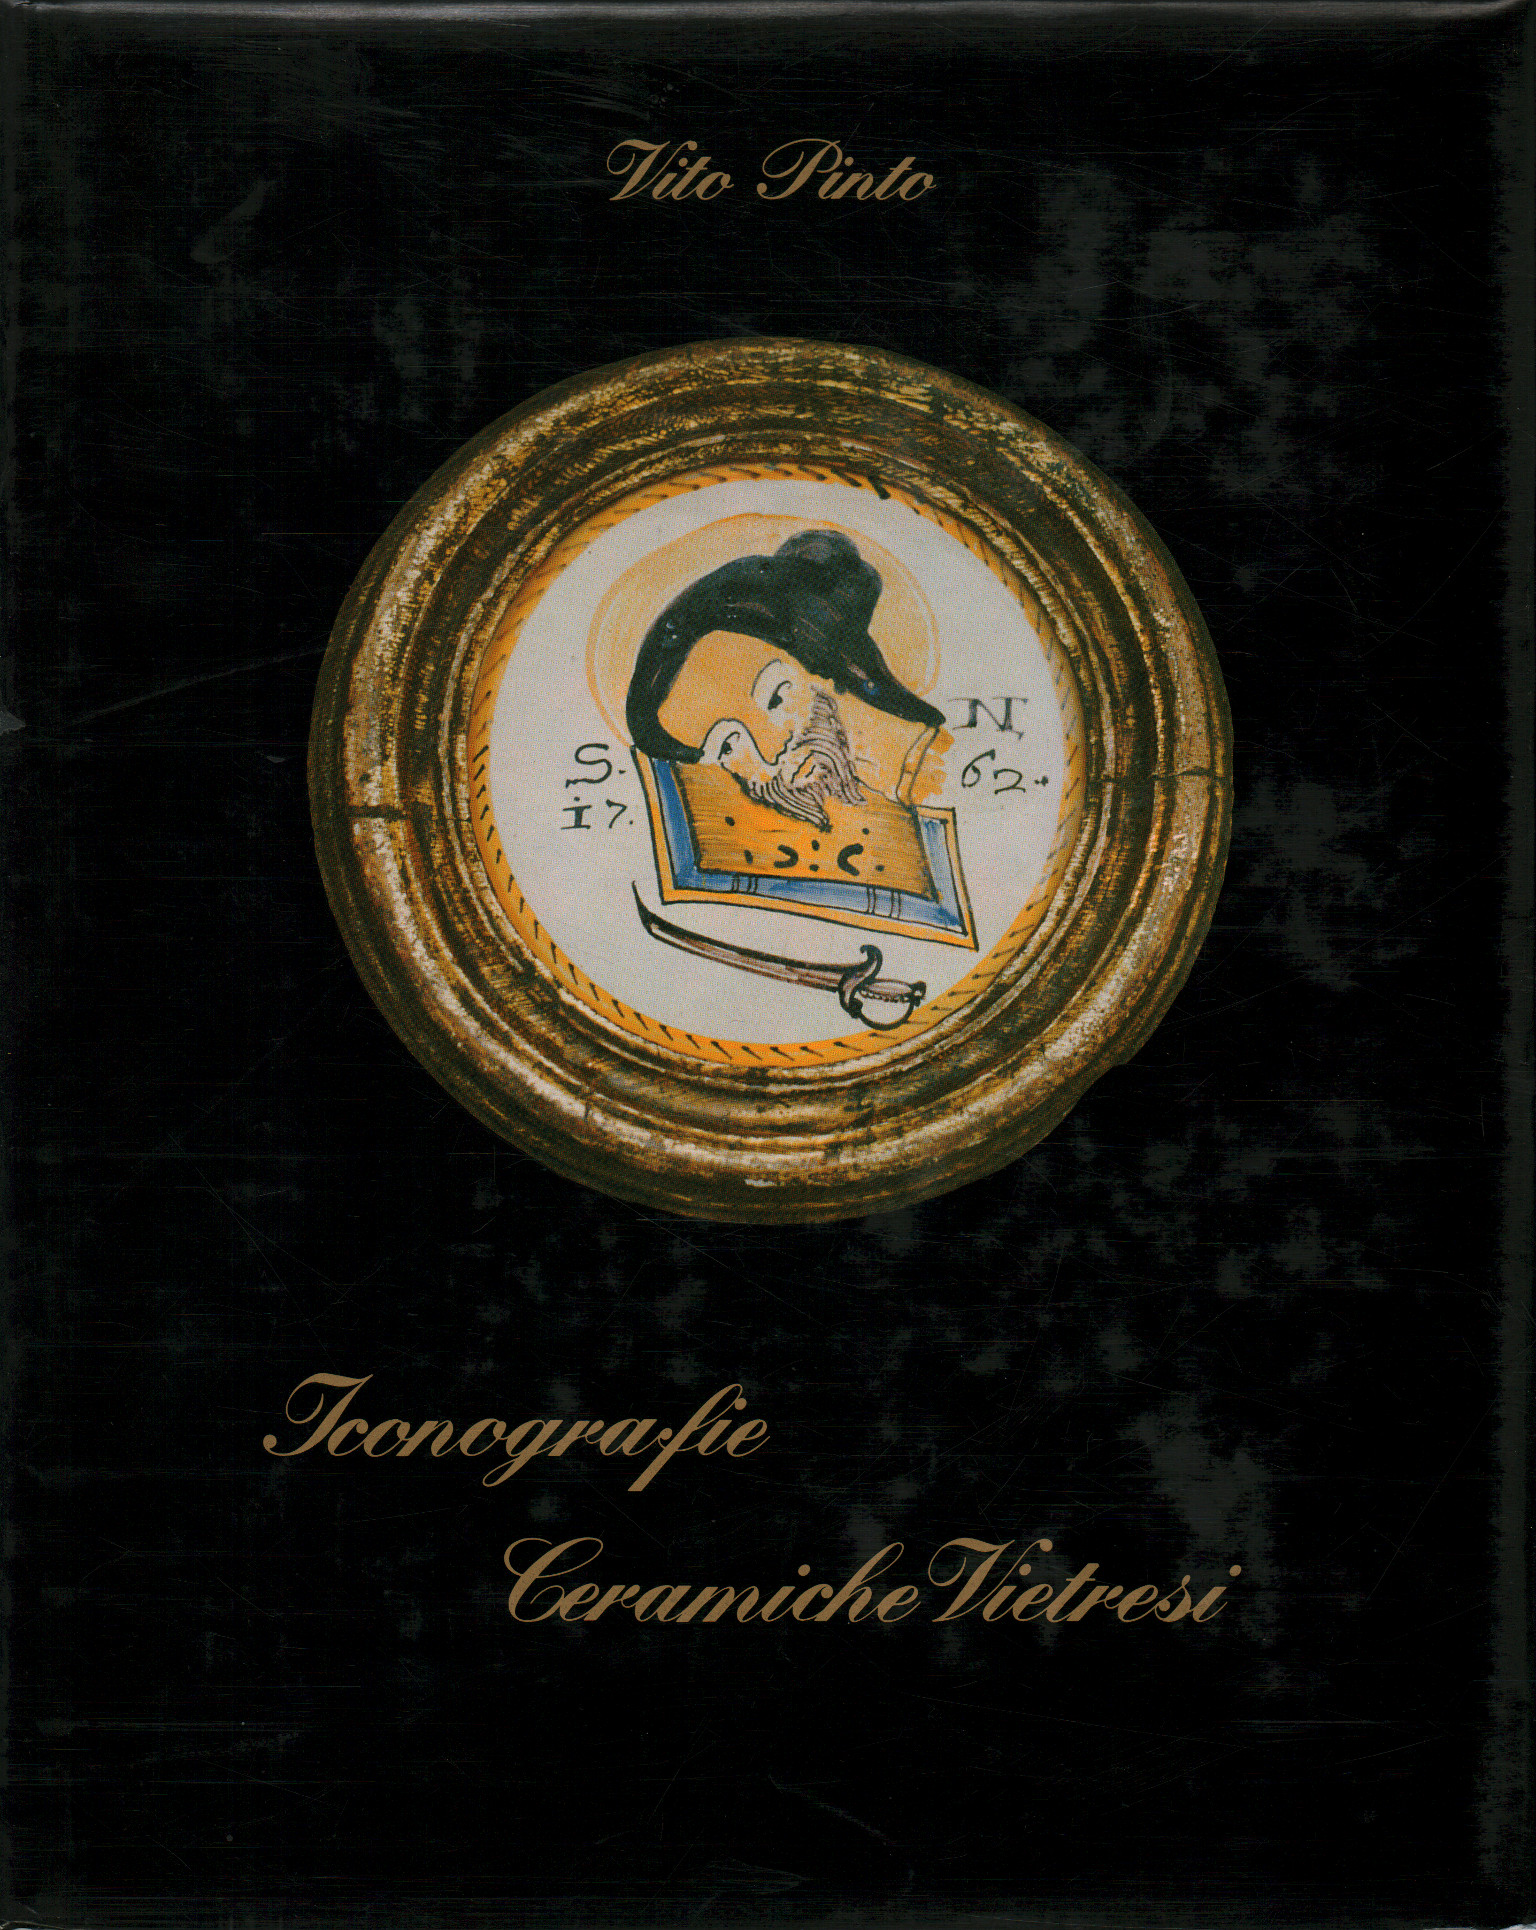 Iconografía cerámica de Vietri, Vito Pinto